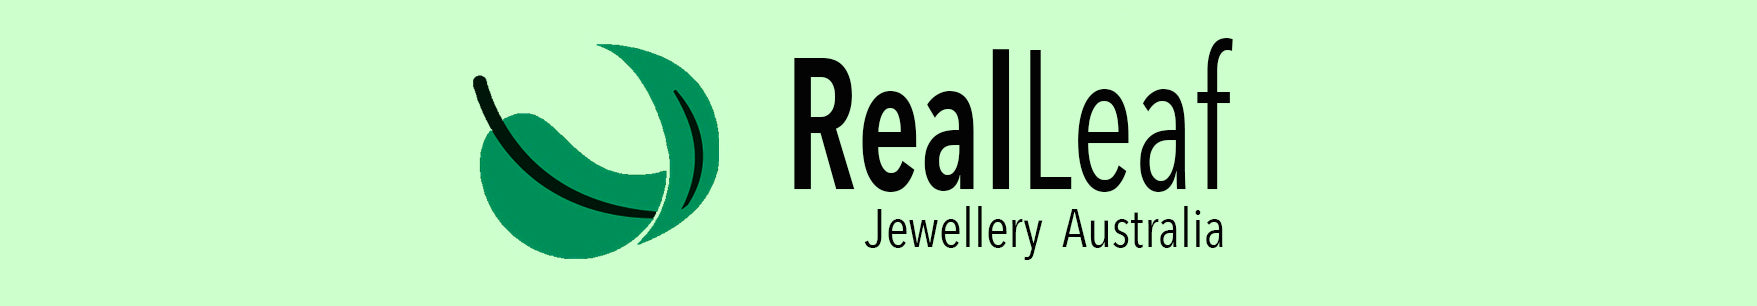 Real Leaf Jewellery Australia